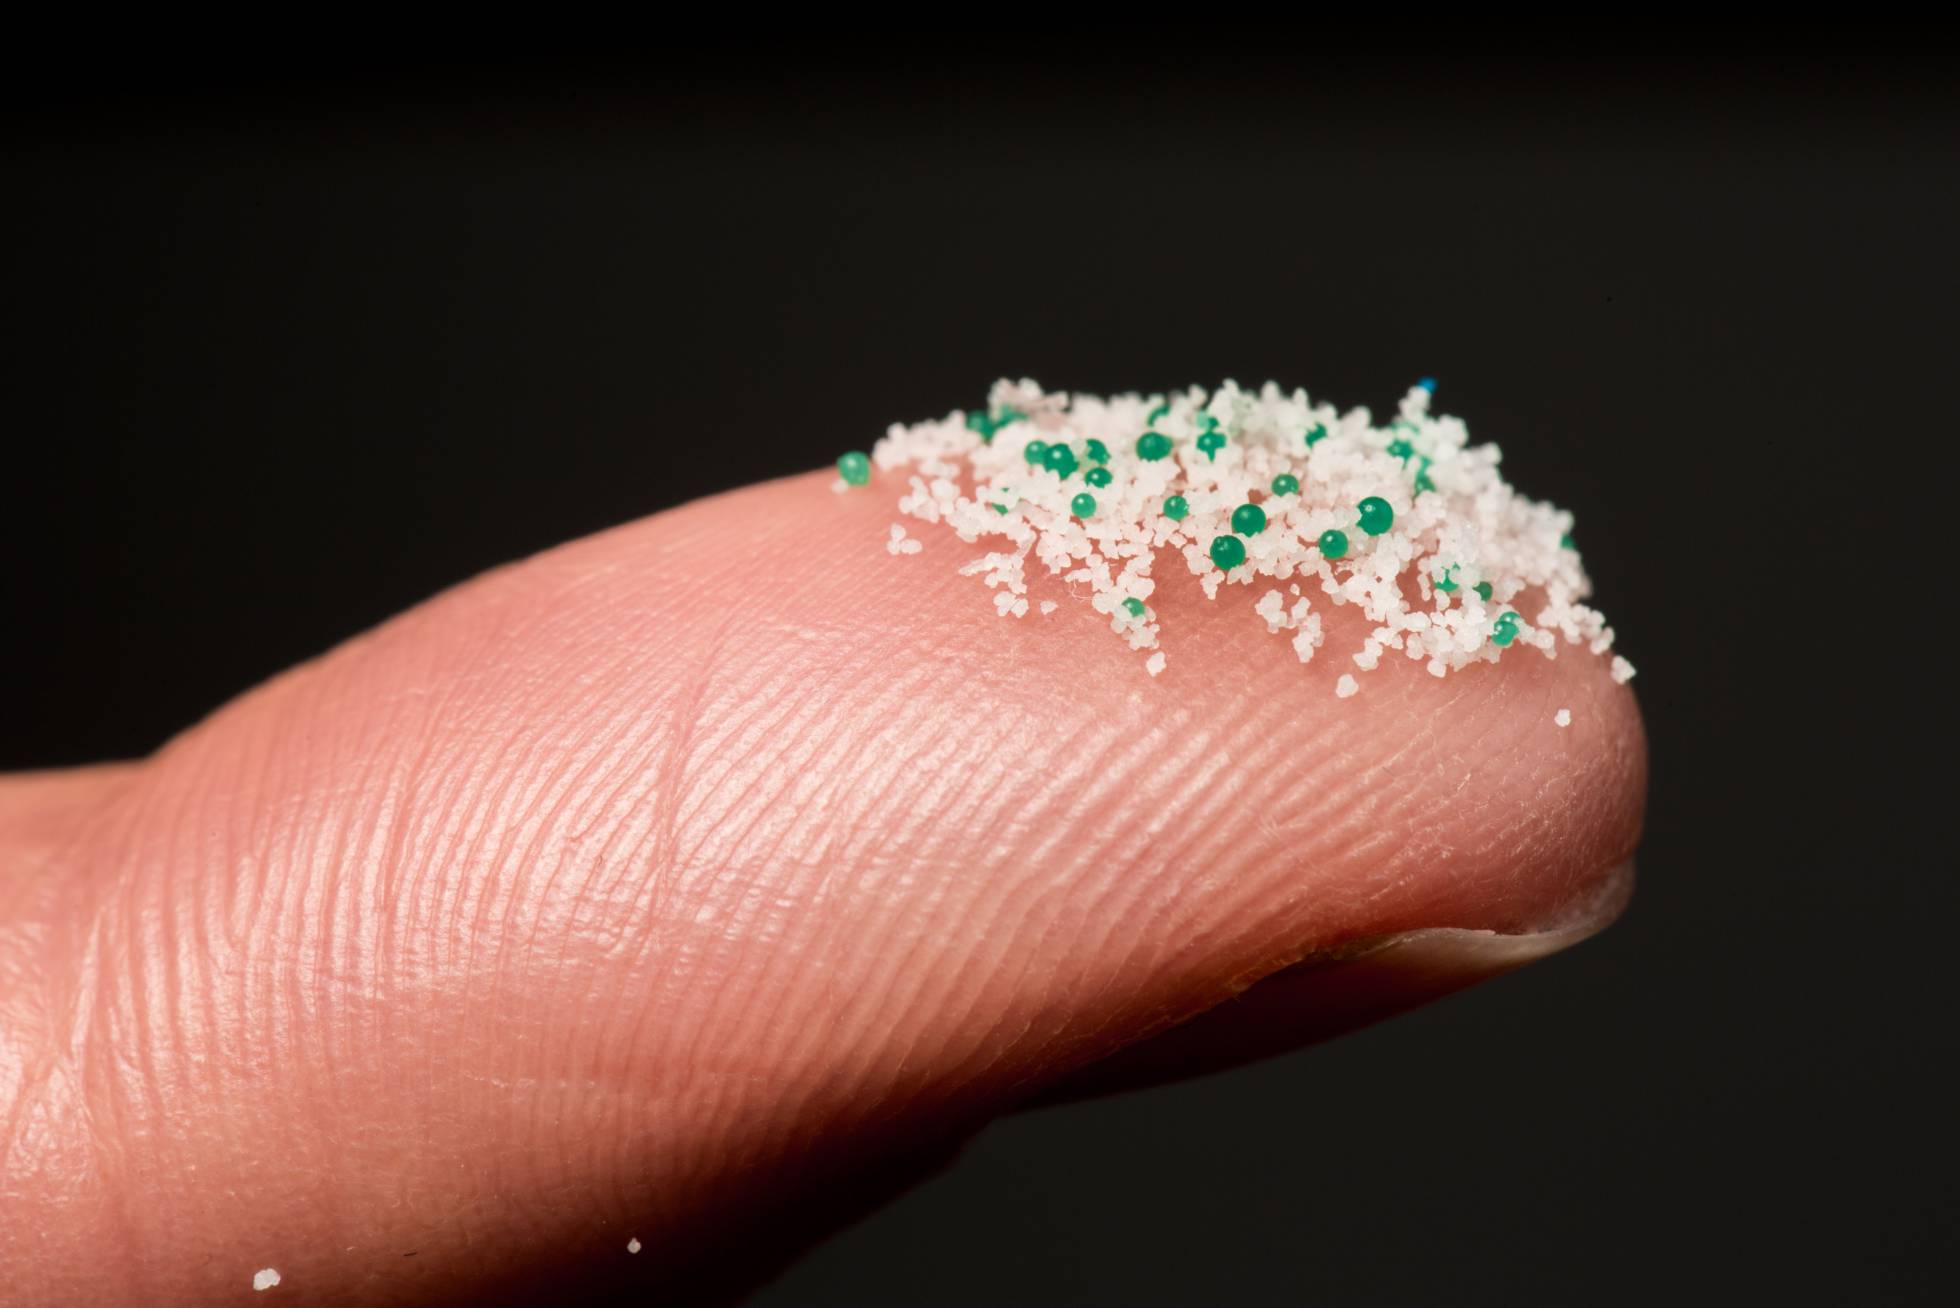 Estudio halla microplásticos en heces de personas